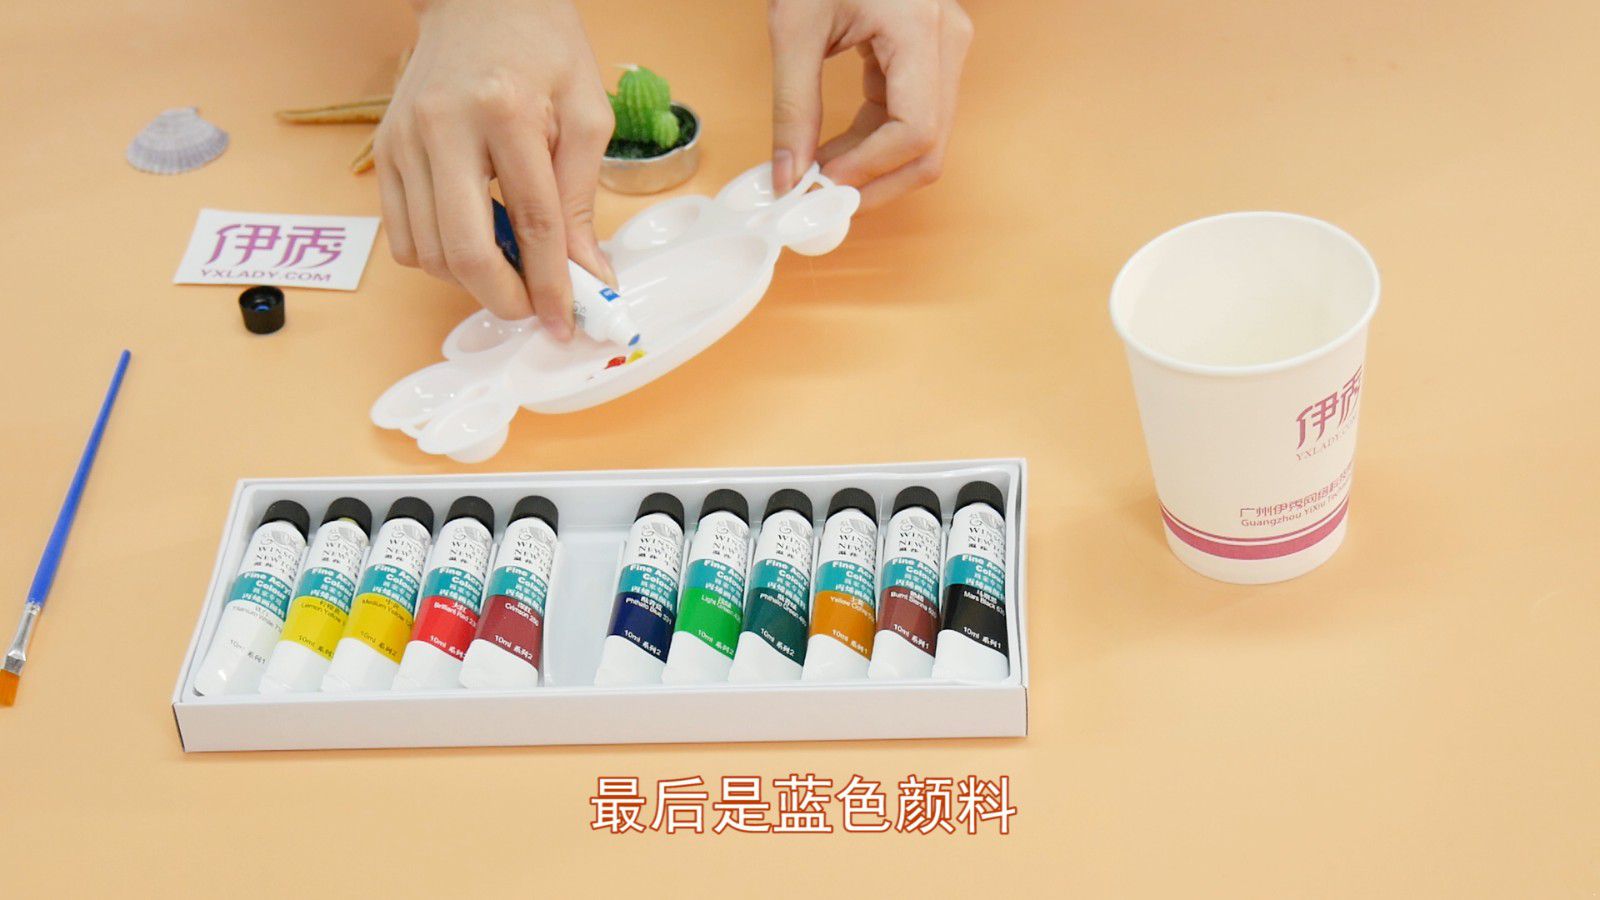 咖啡色怎么调用这几种颜色就可以调出来